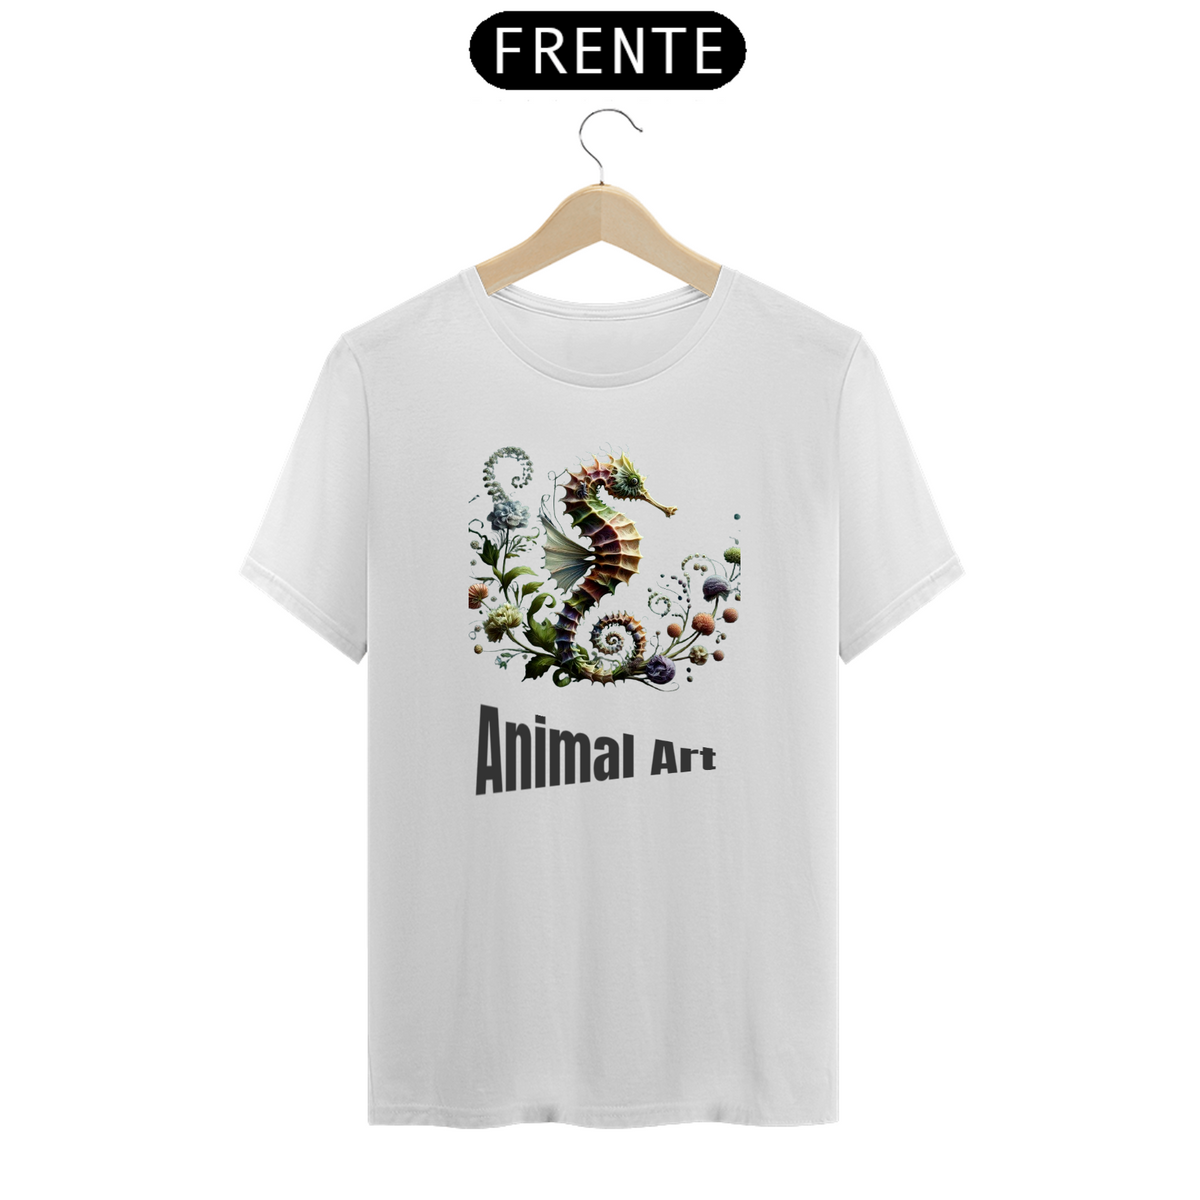 Nome do produto: Série Animal Art